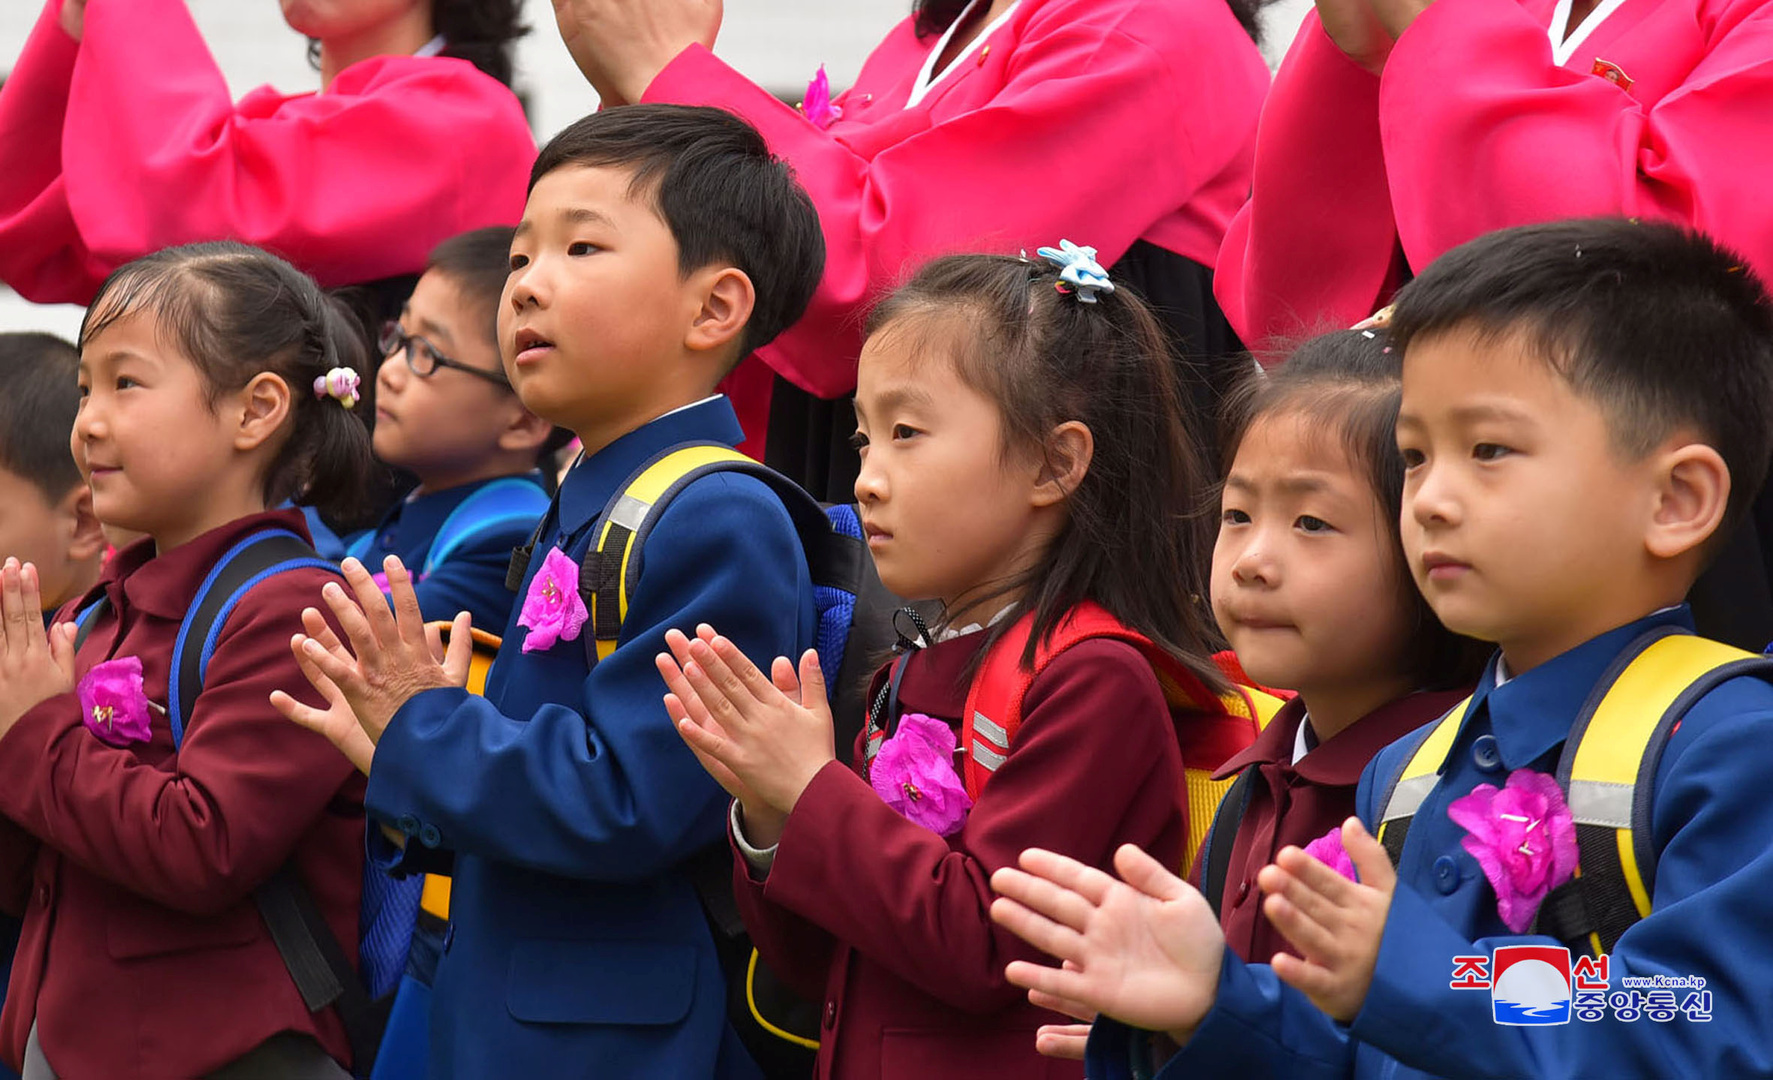 كوريا الشمالية تستأنف الحضور في المدارس جزئيا